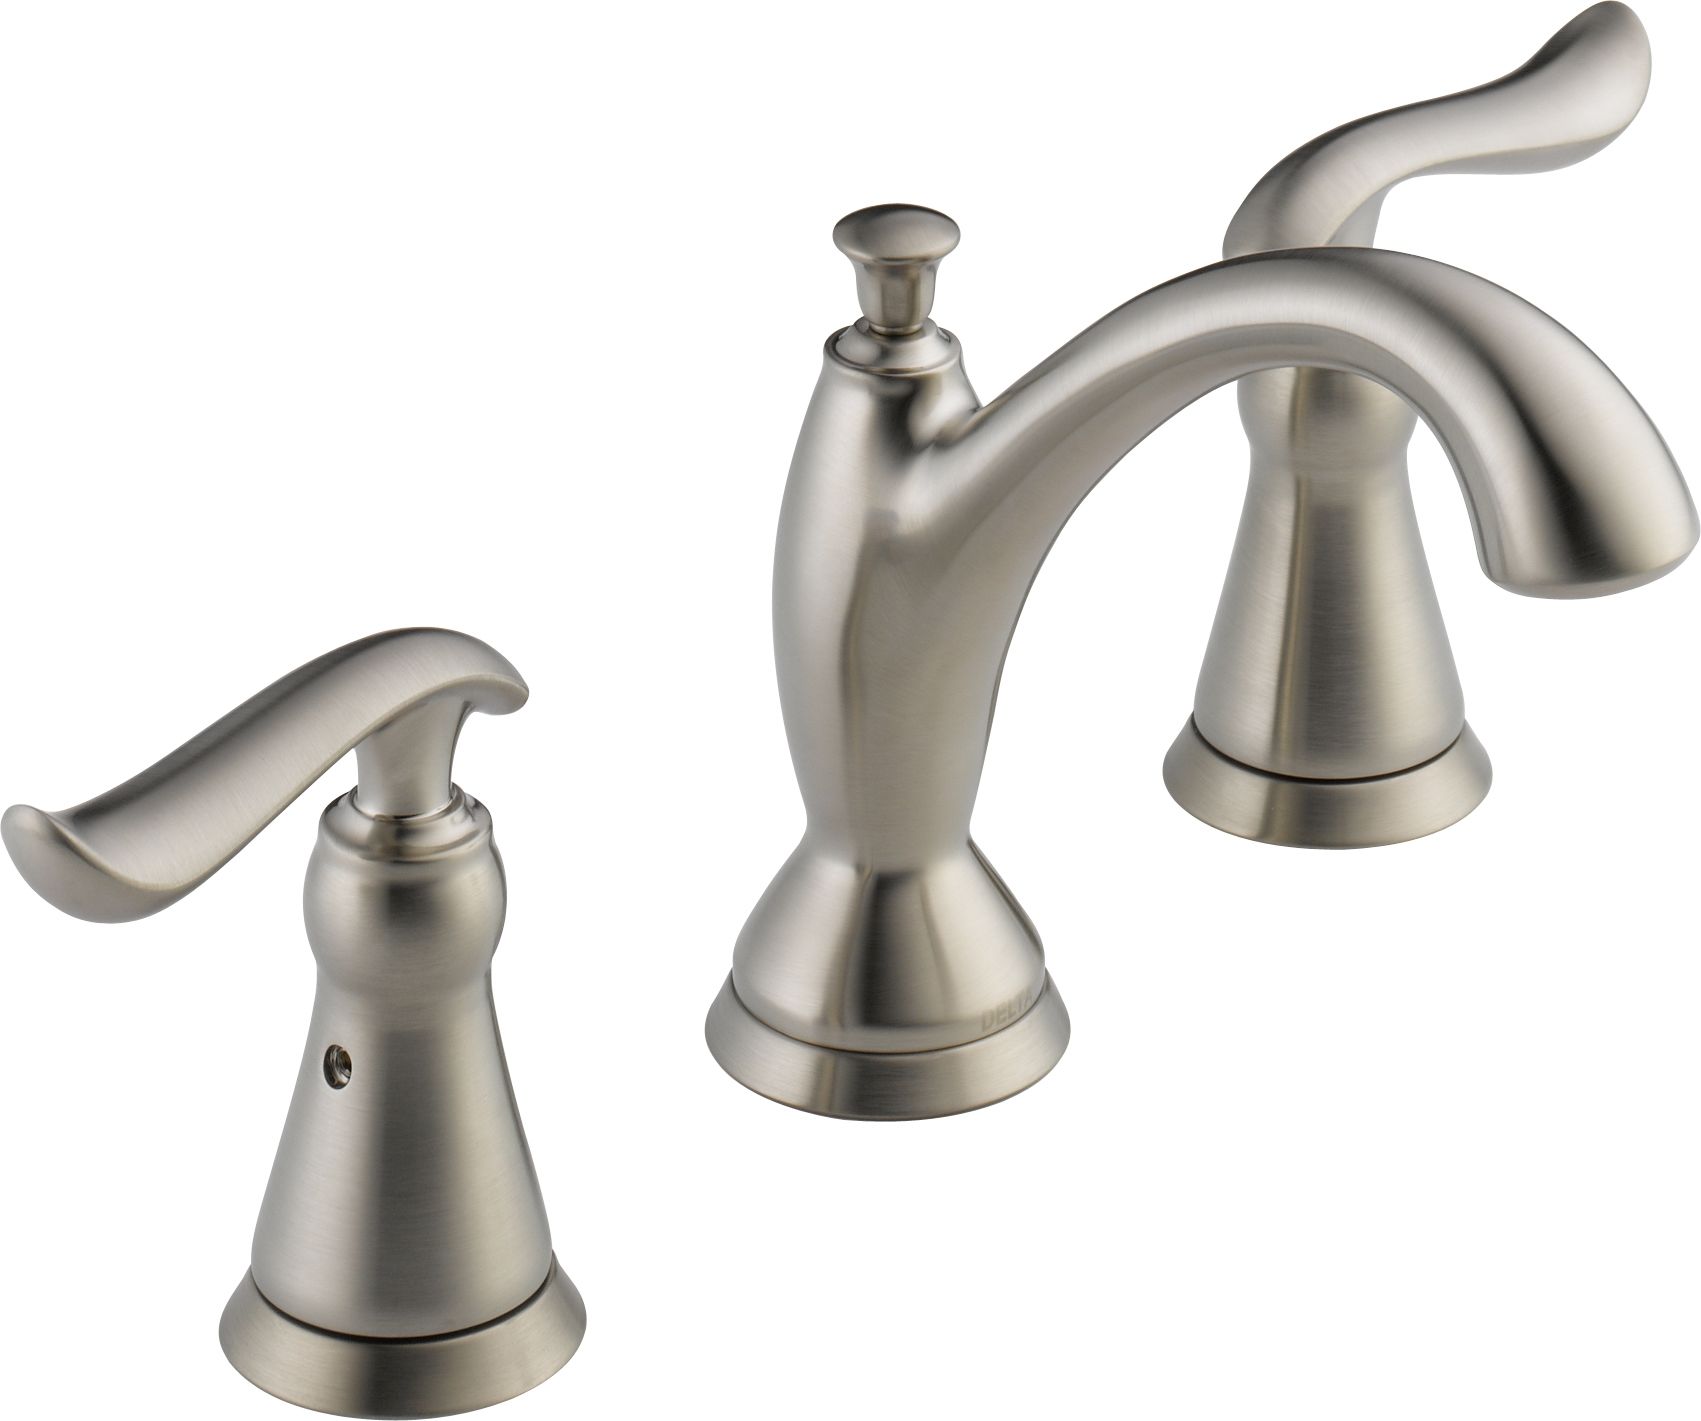 Linden Widespread Bathroom Faucet With, Delta Brushed Nickel Bathroom Faucet Widespread